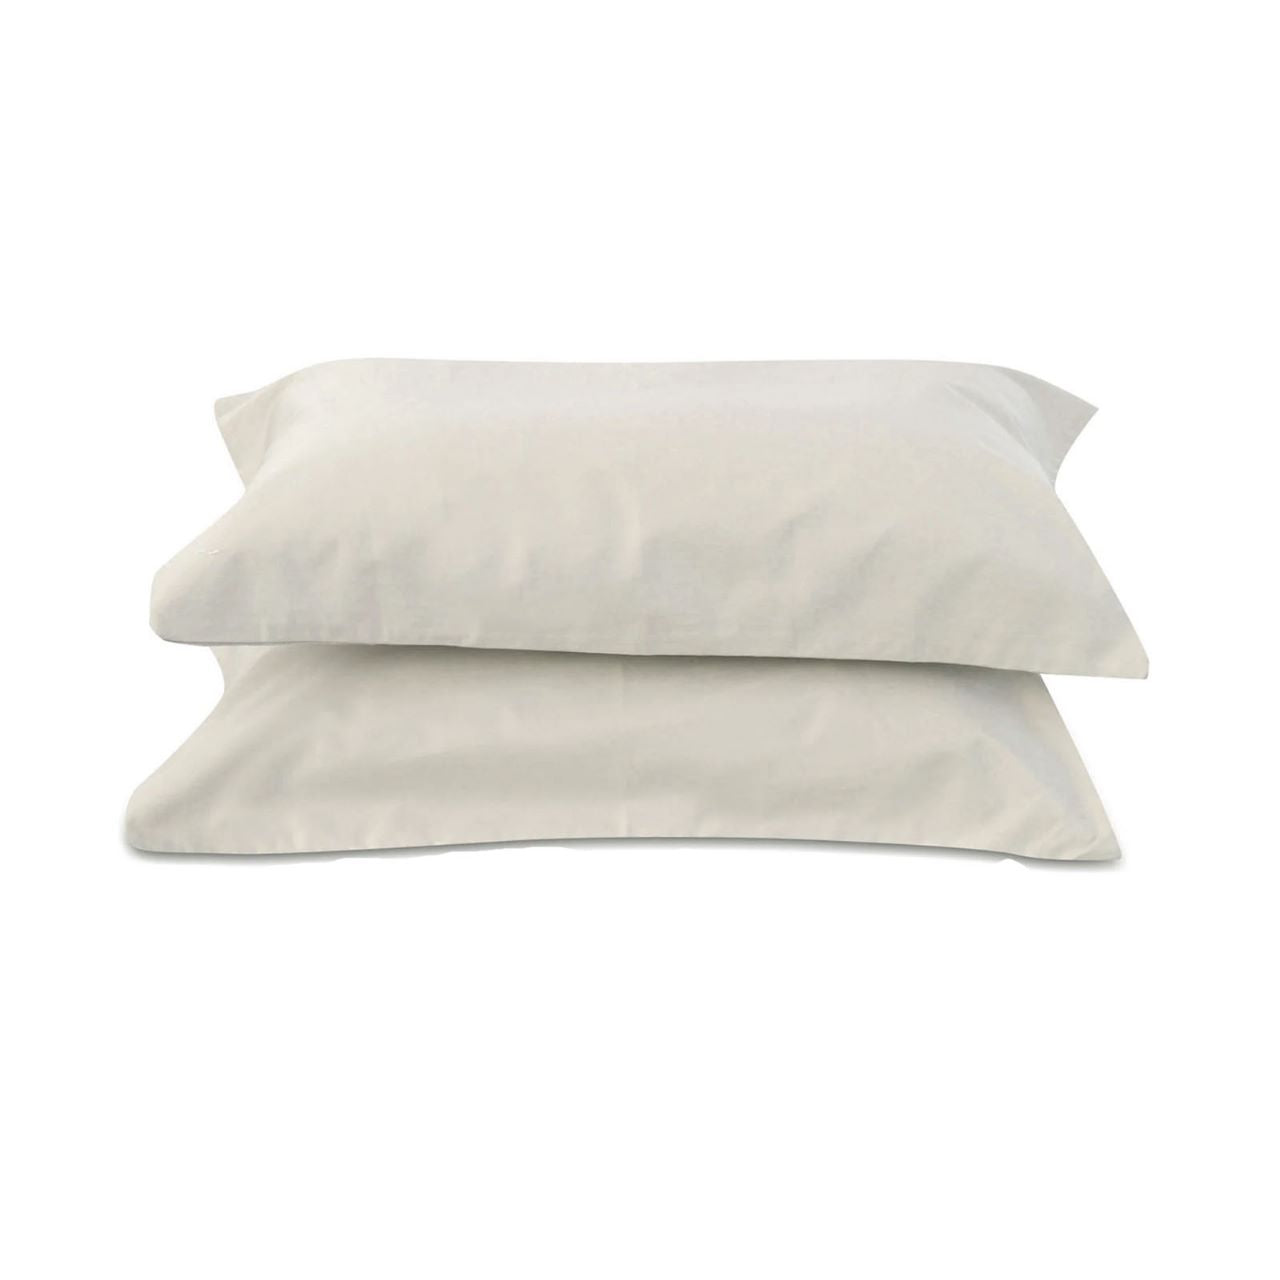 Off-White Pillowcases, Set of 2 (400 TC)